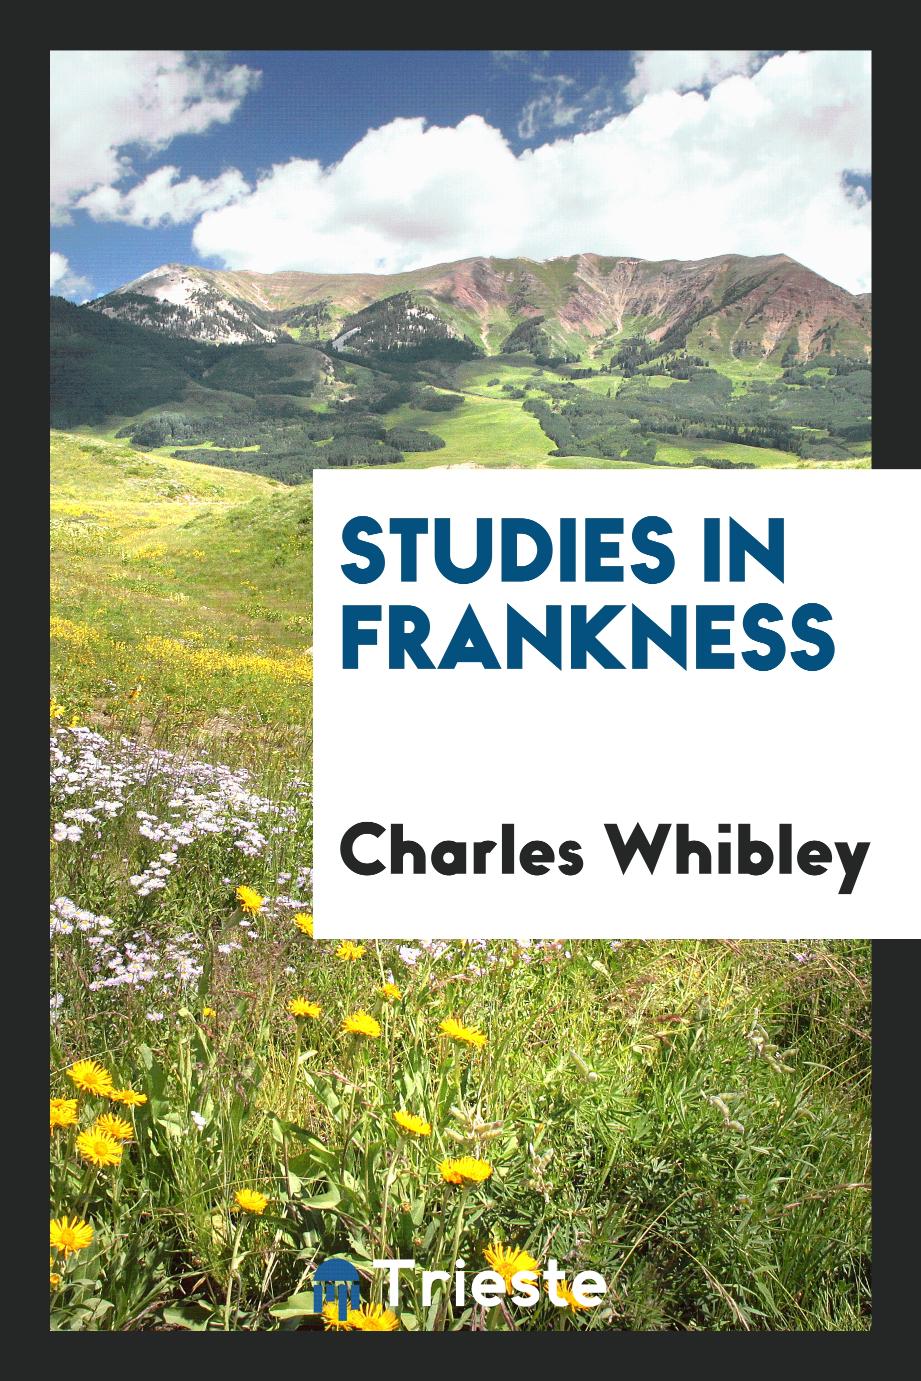 Studies in frankness